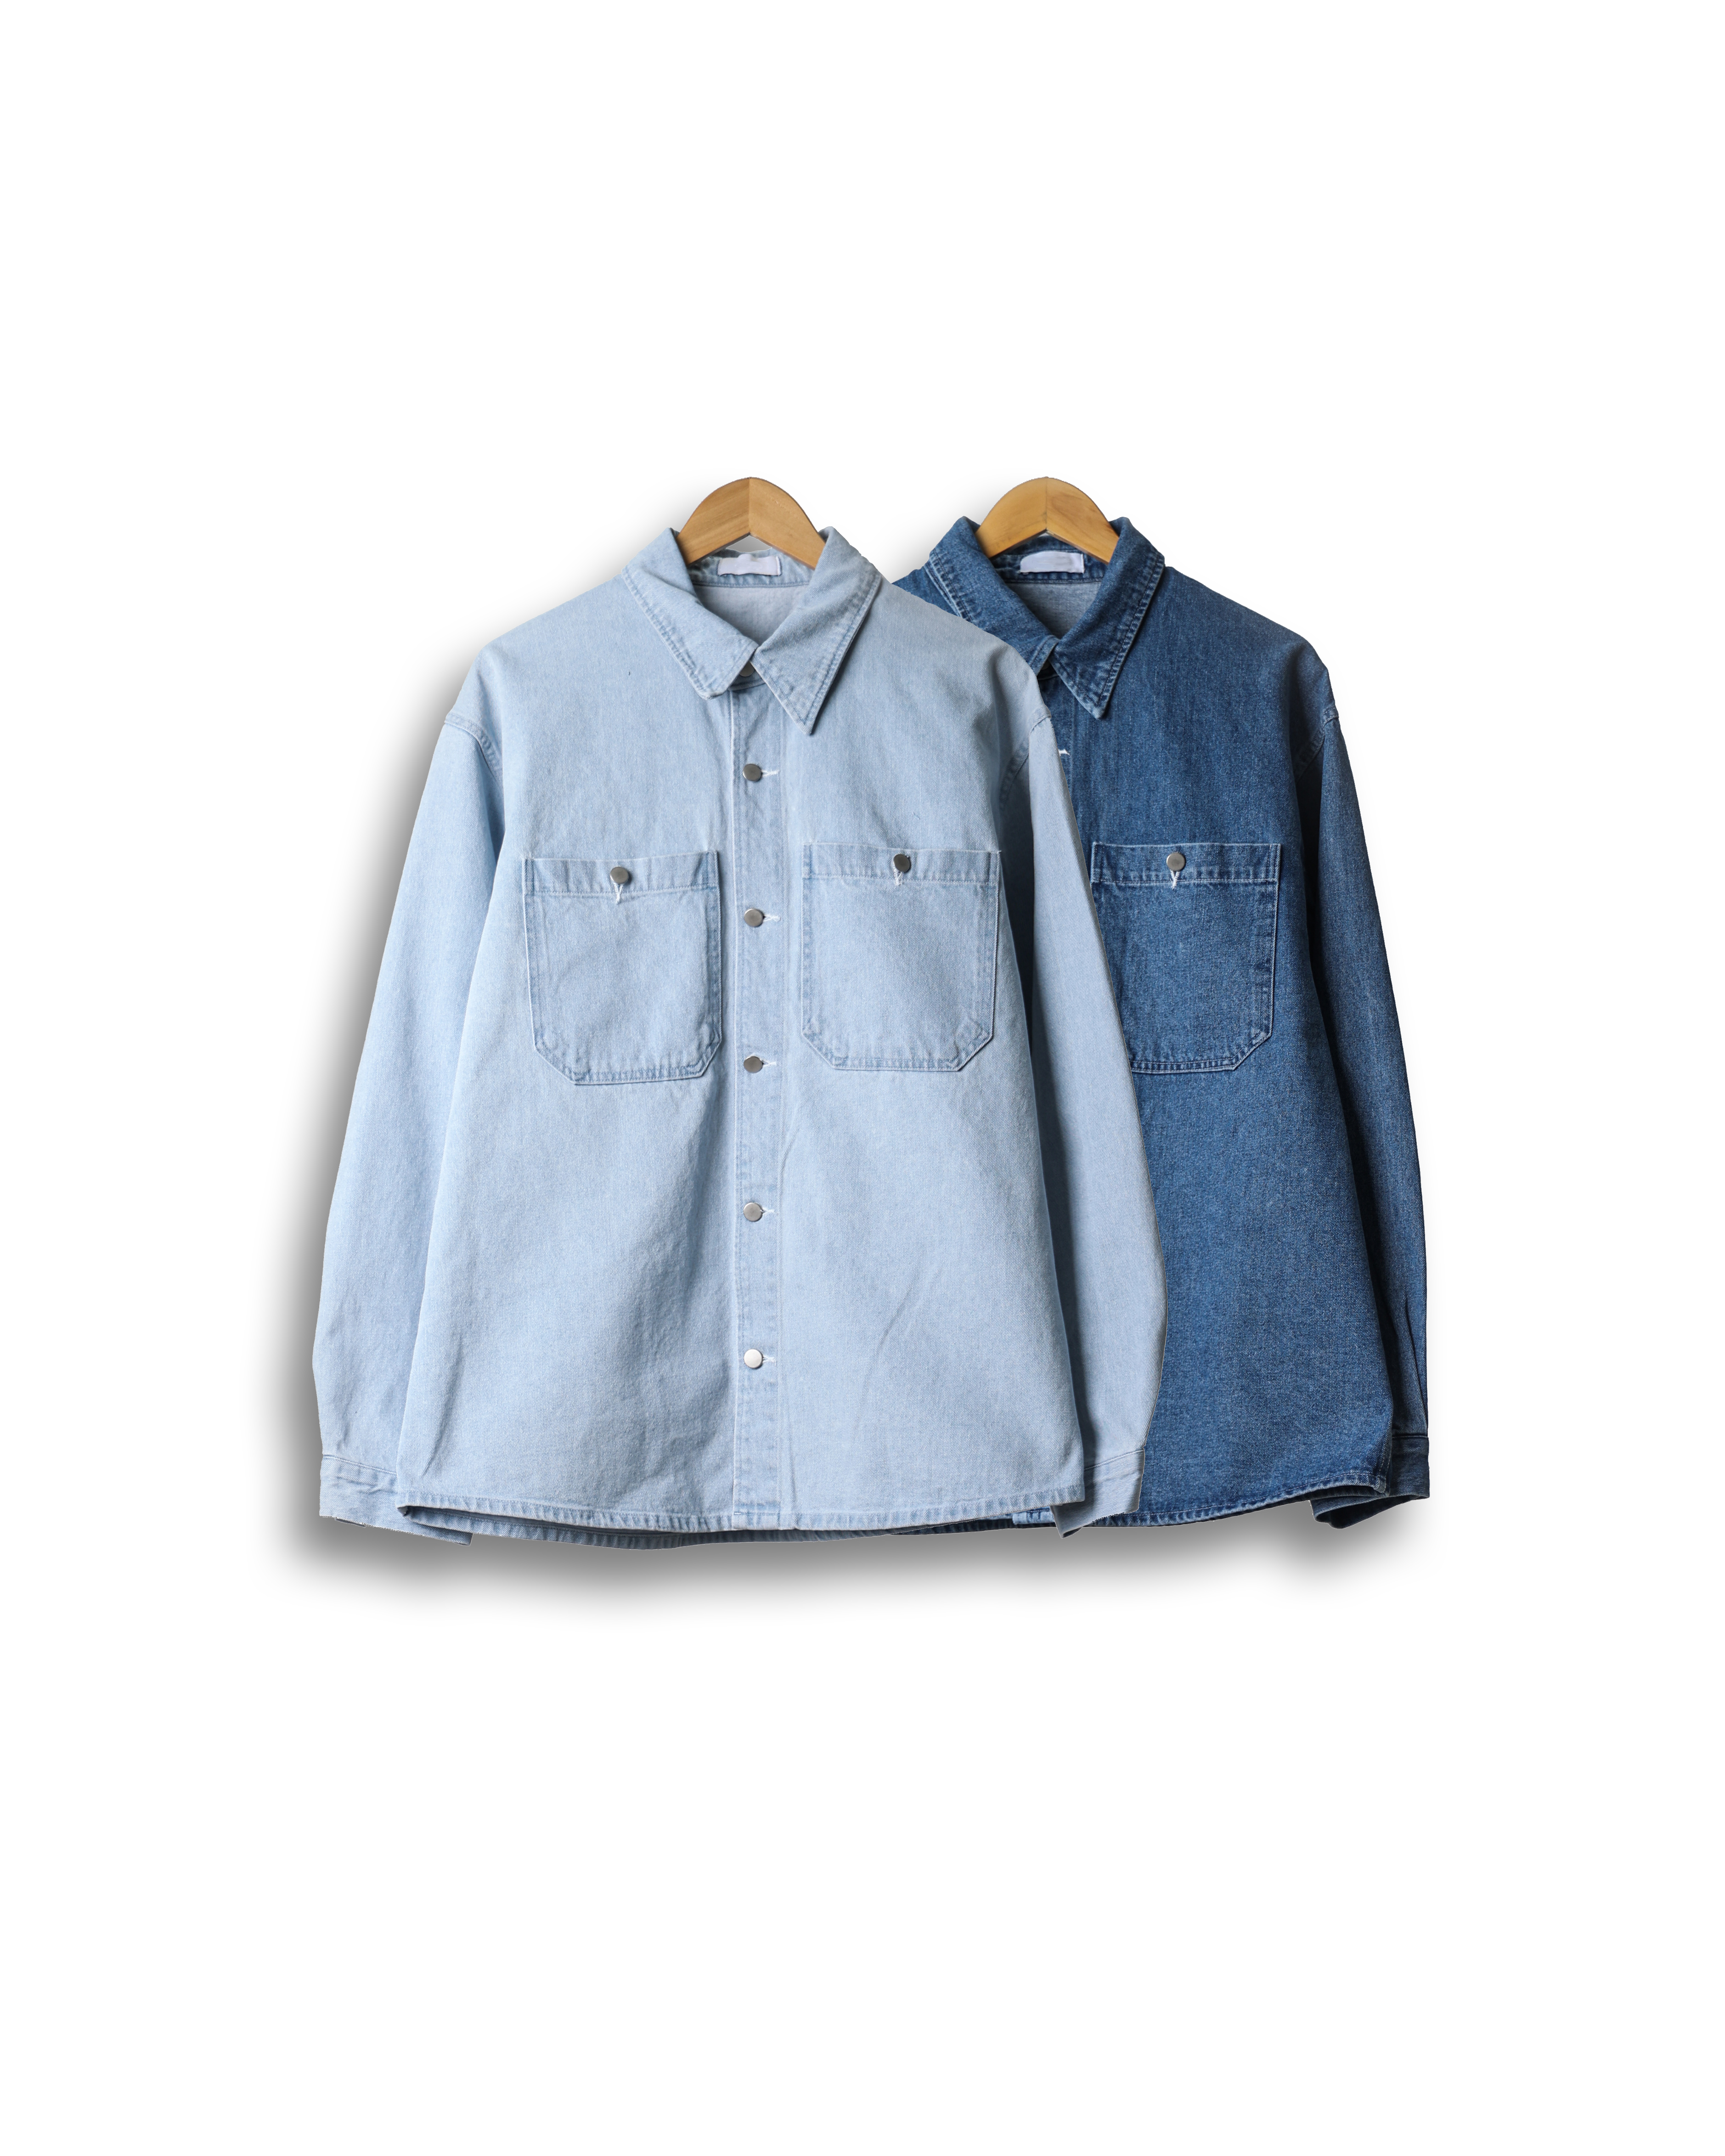 NSWER Two Pocket Denim Shirts Jacket (Middle Denim/Light Denim)